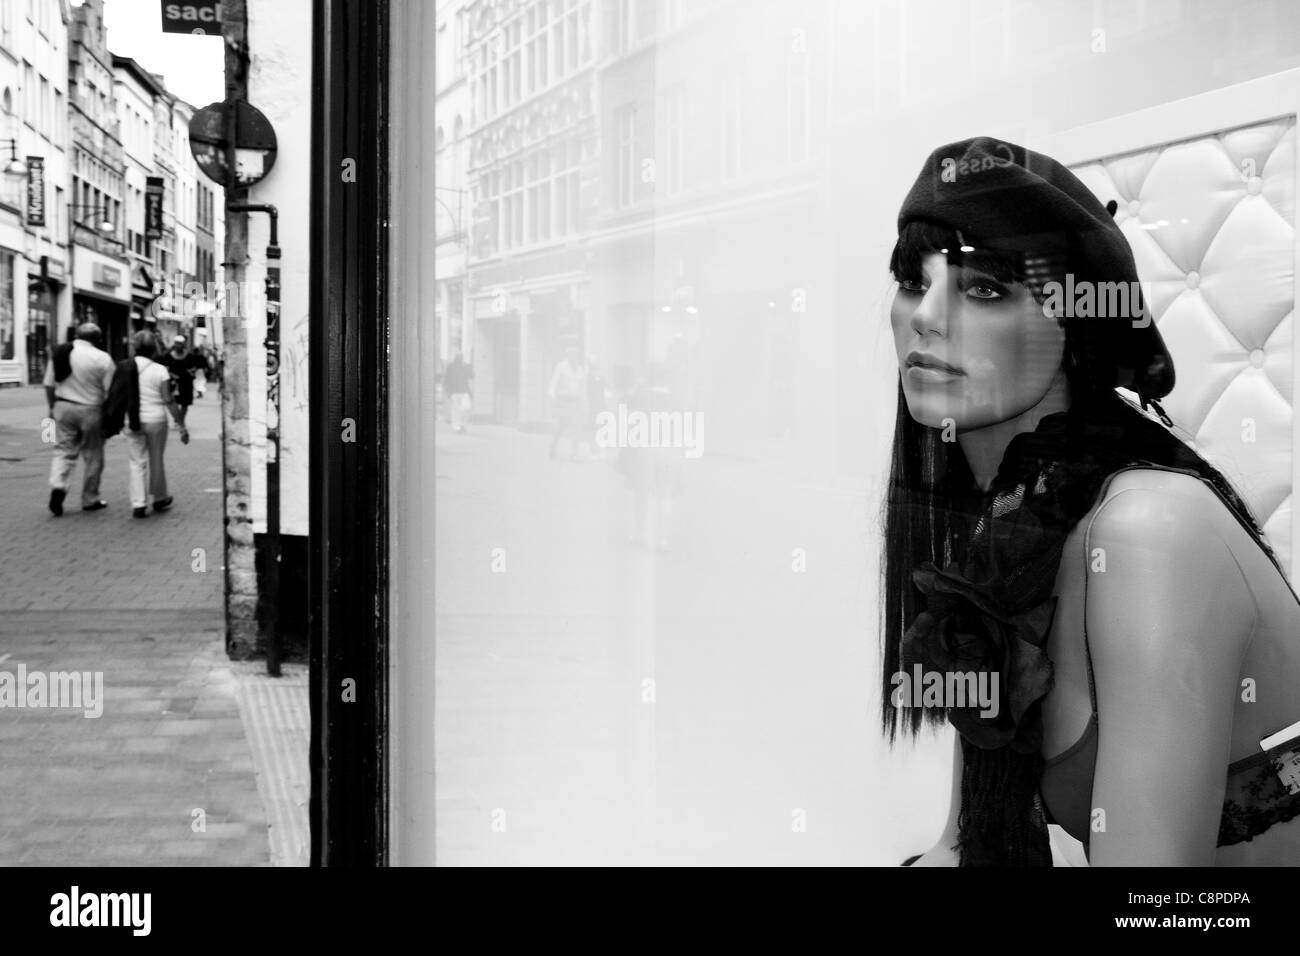 Einkaufsstraße in Gent, Belgien. Schaufenster mit Dummy im Fokus Stockfoto